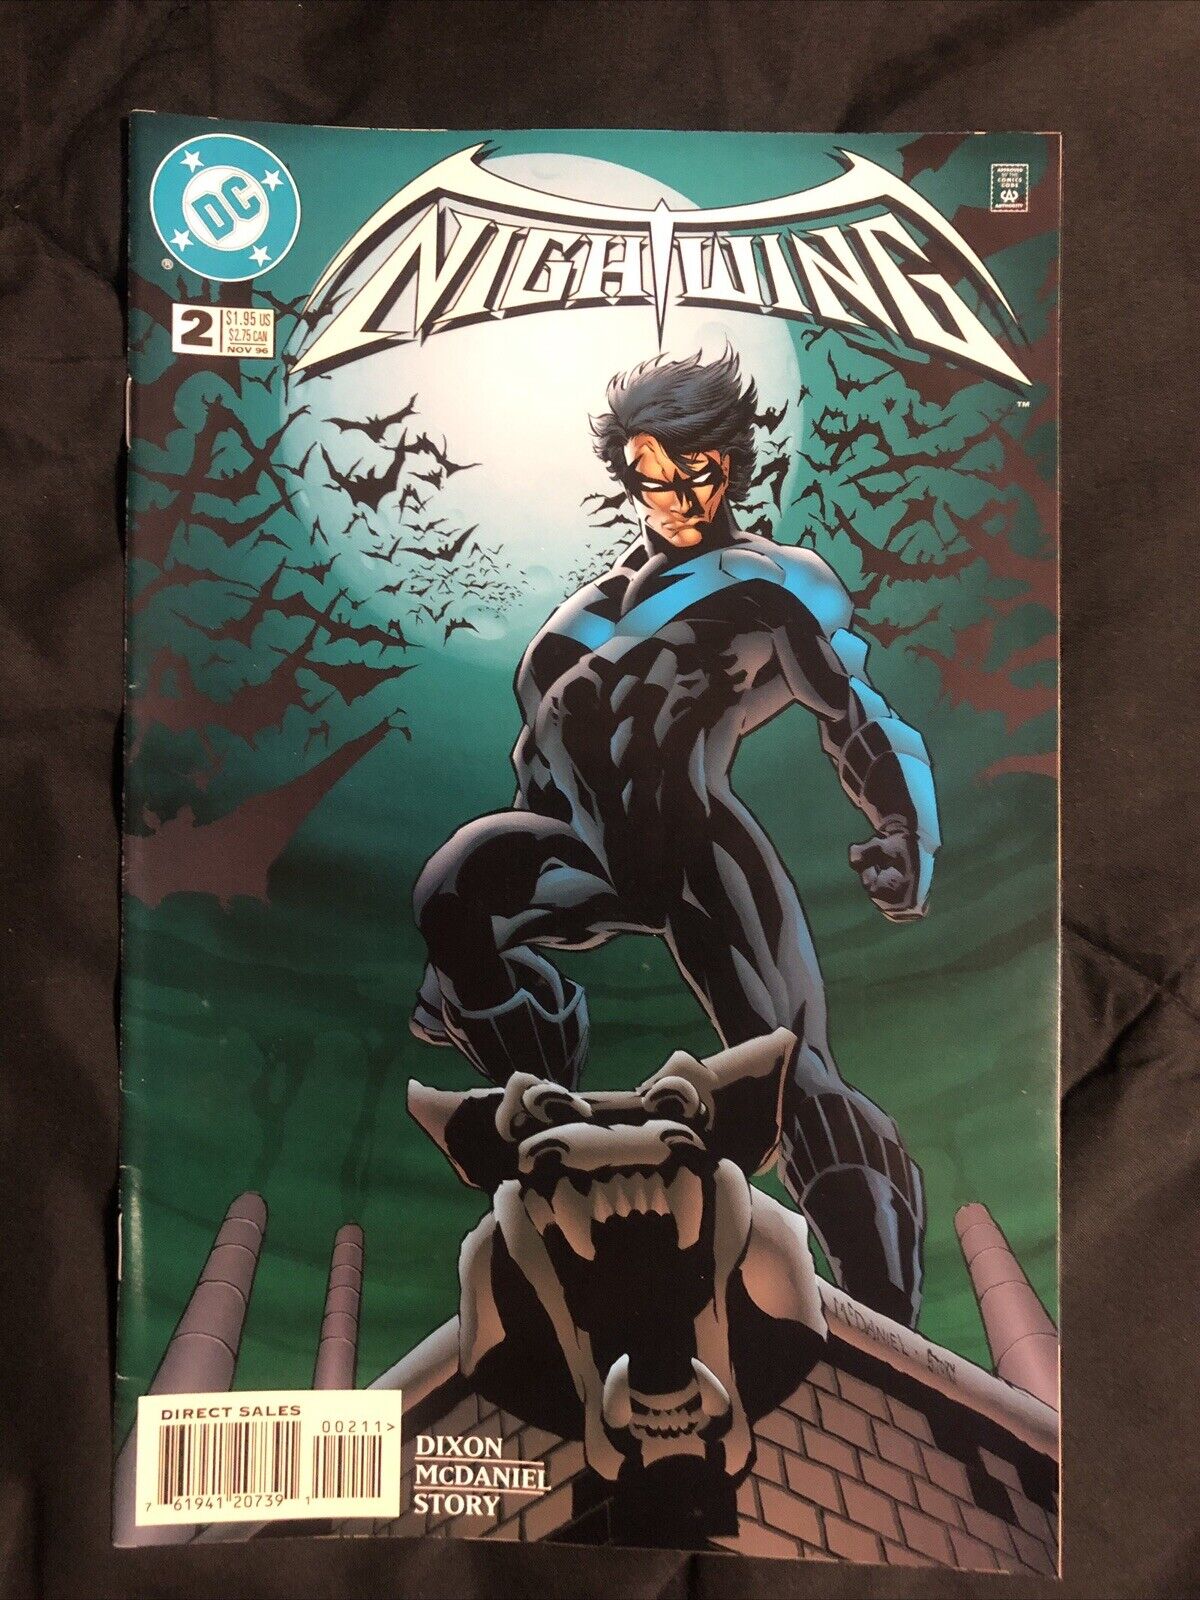 Nightwing #2 (DC Comics November 1996) NM/M